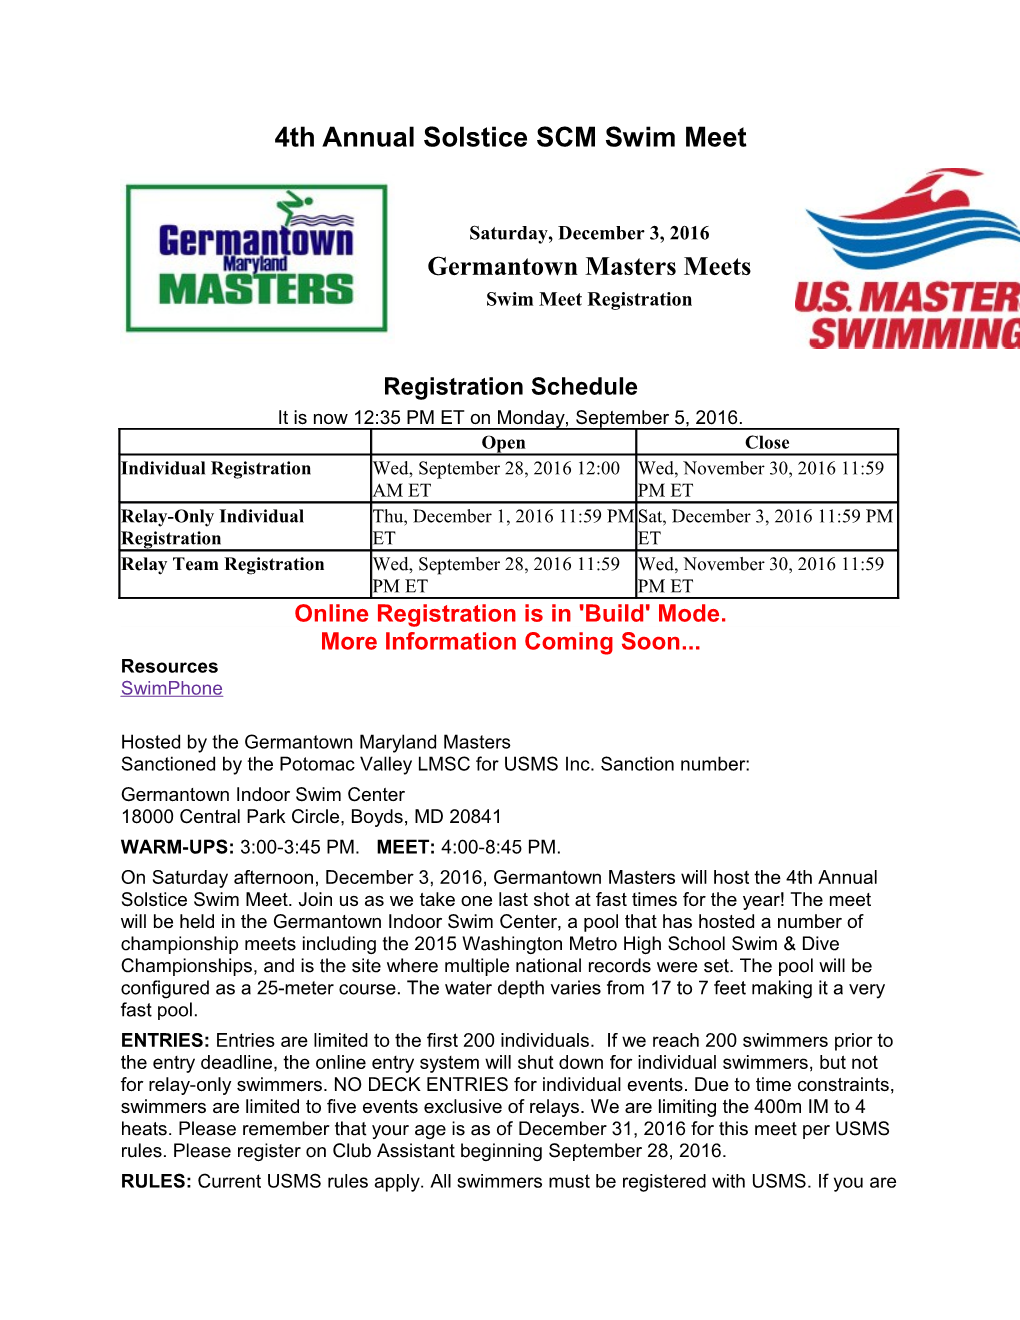 4Th Annual Solstice SCM Swim Meet